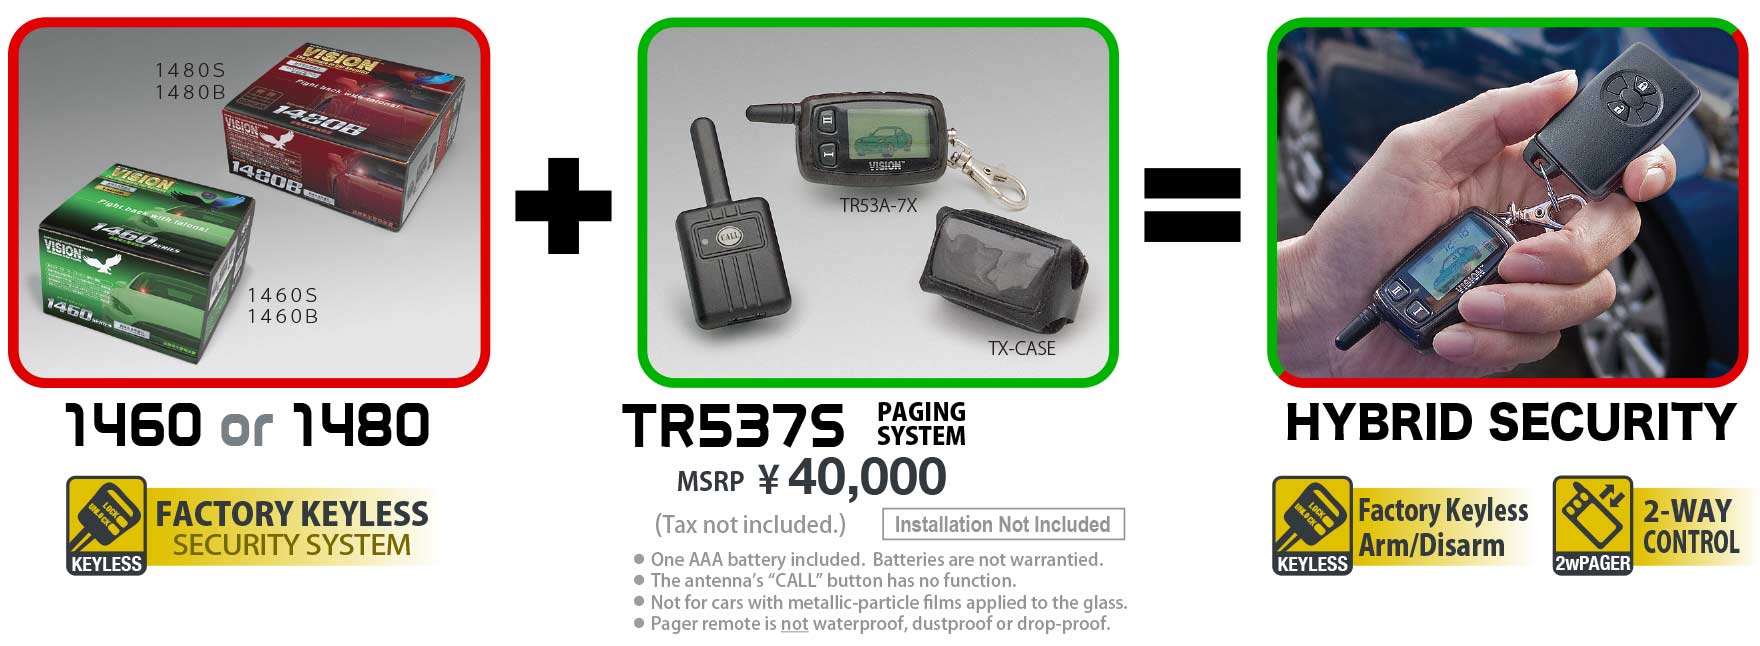 TR537S photo & price